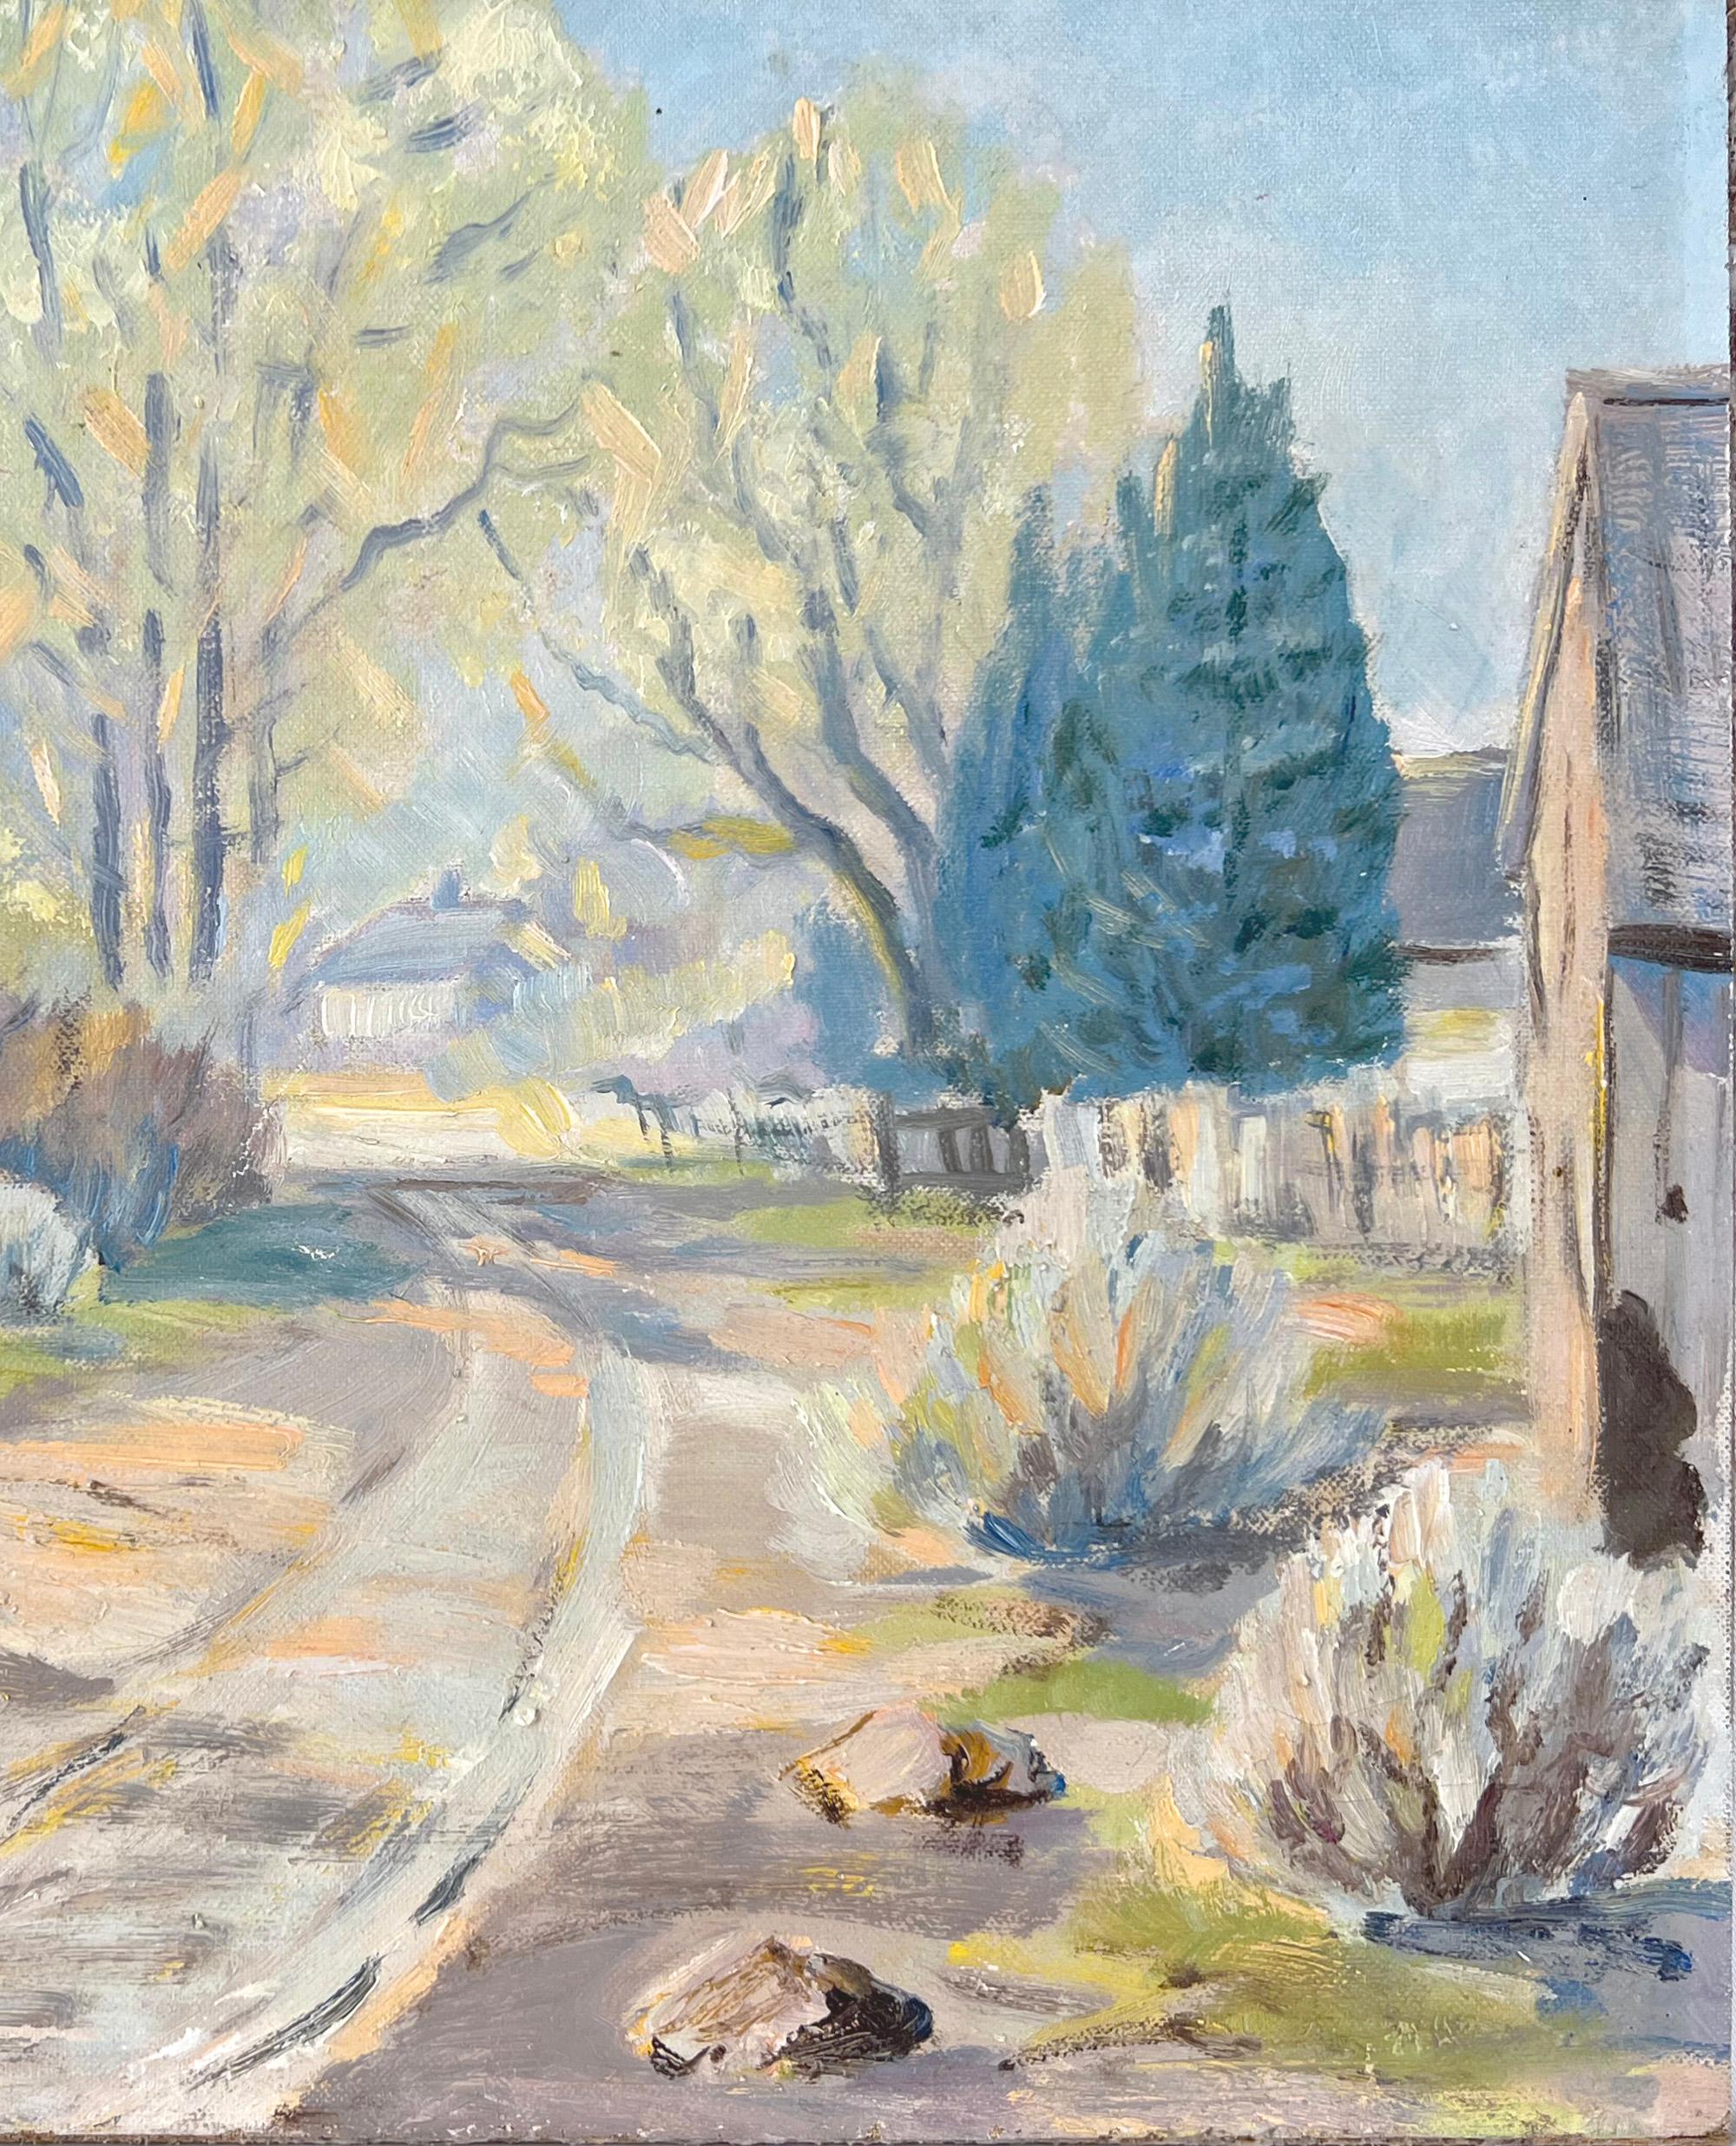 California School - Desert Ranch Road Landschaft Öl auf Leinwand (Amerikanischer Impressionismus), Painting, von Unknown